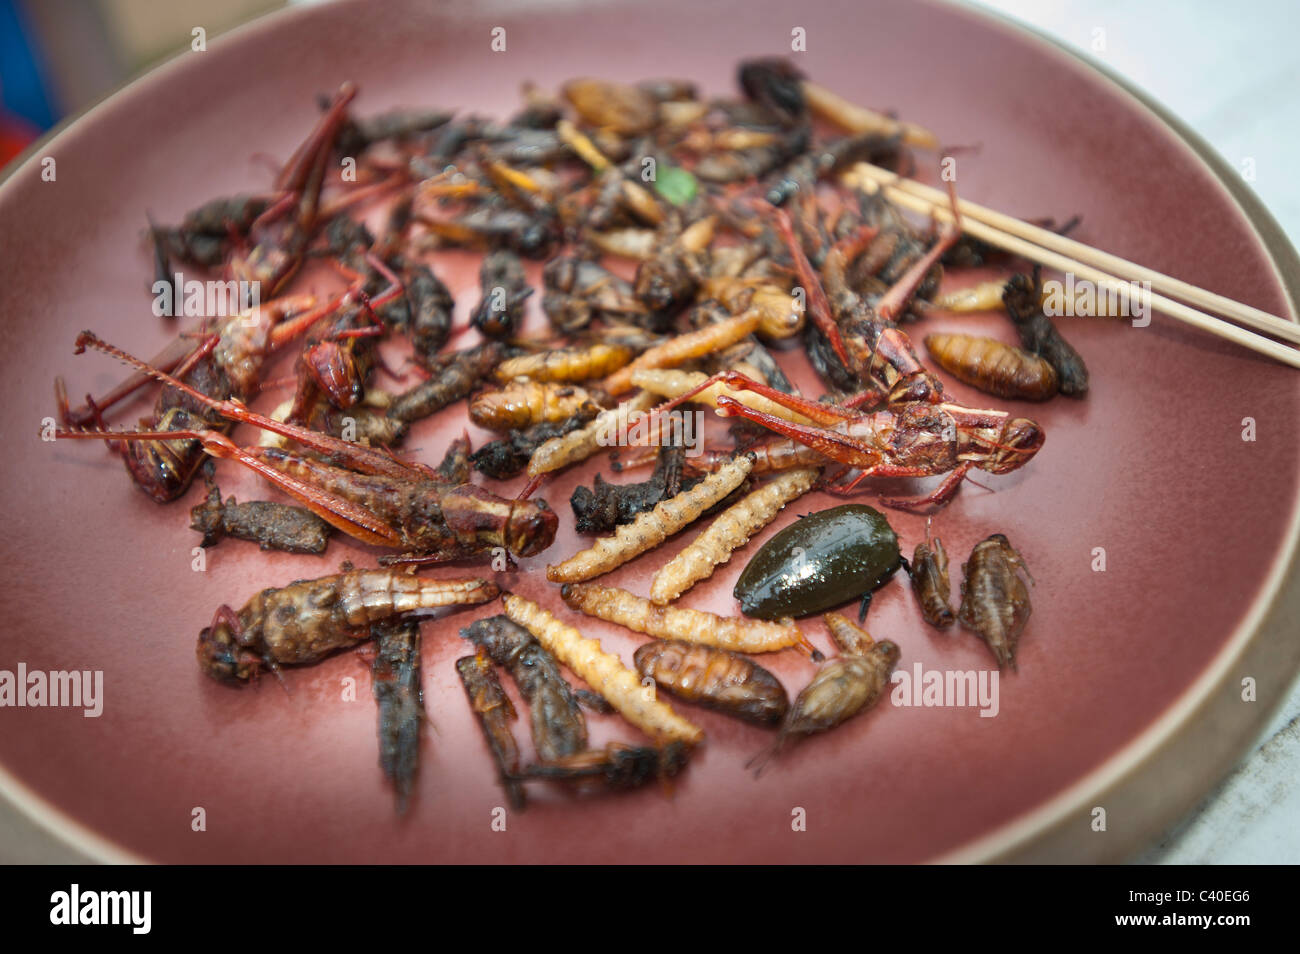 Insekten essen essen gebraten auf Platte Thailand thai thailändischen Snack Insekten leckere feine Cricket Heuschrecke Wurm Fehler made Wurm cockroac Stockfoto